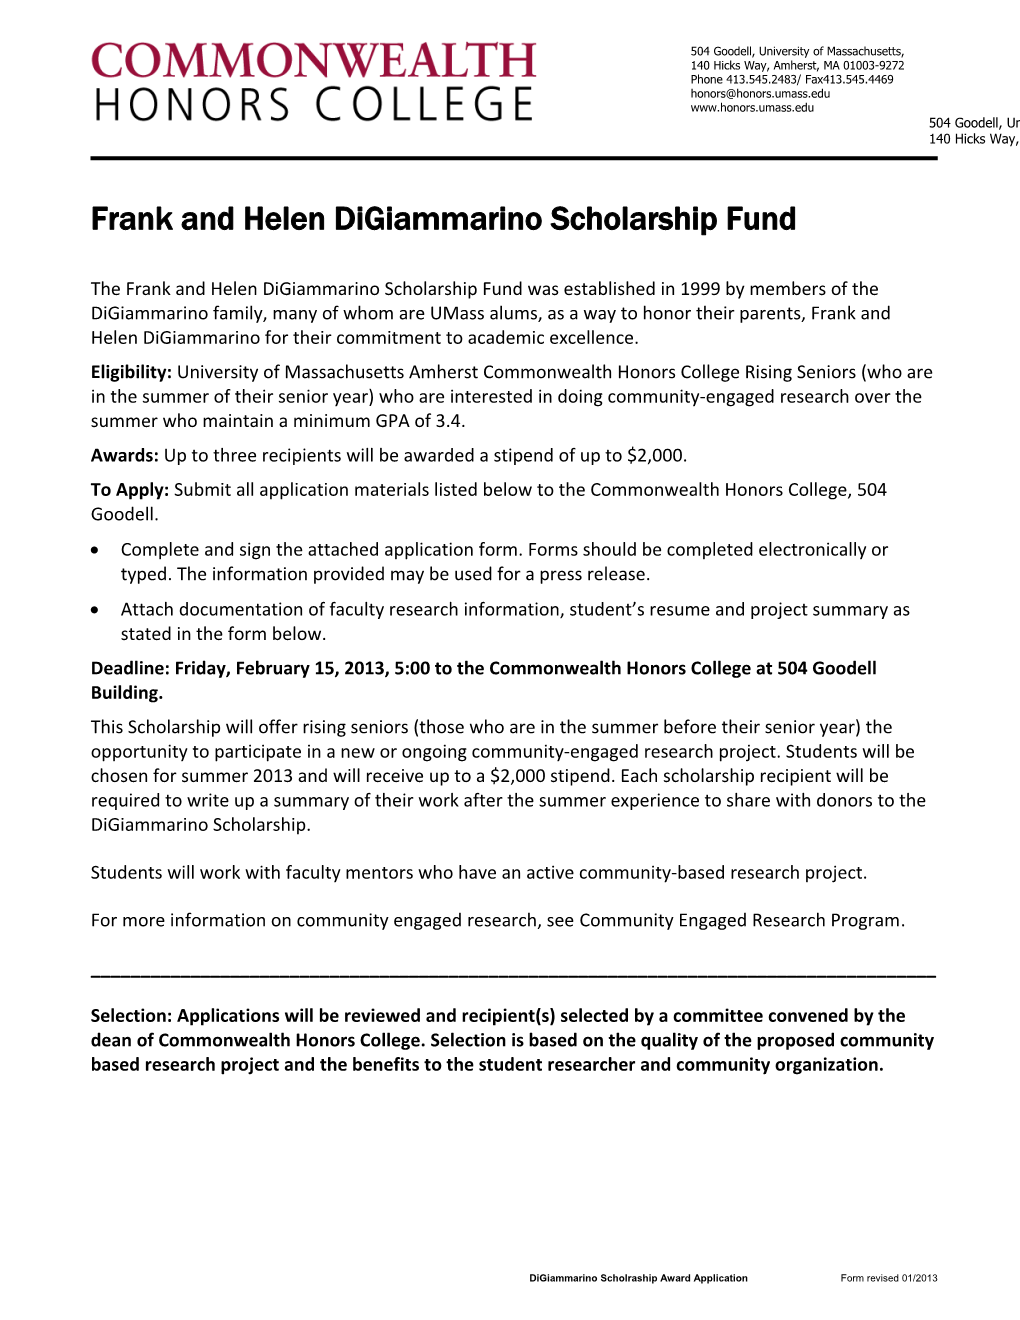 Frank and Helen Digiammarino Scholarship Fund